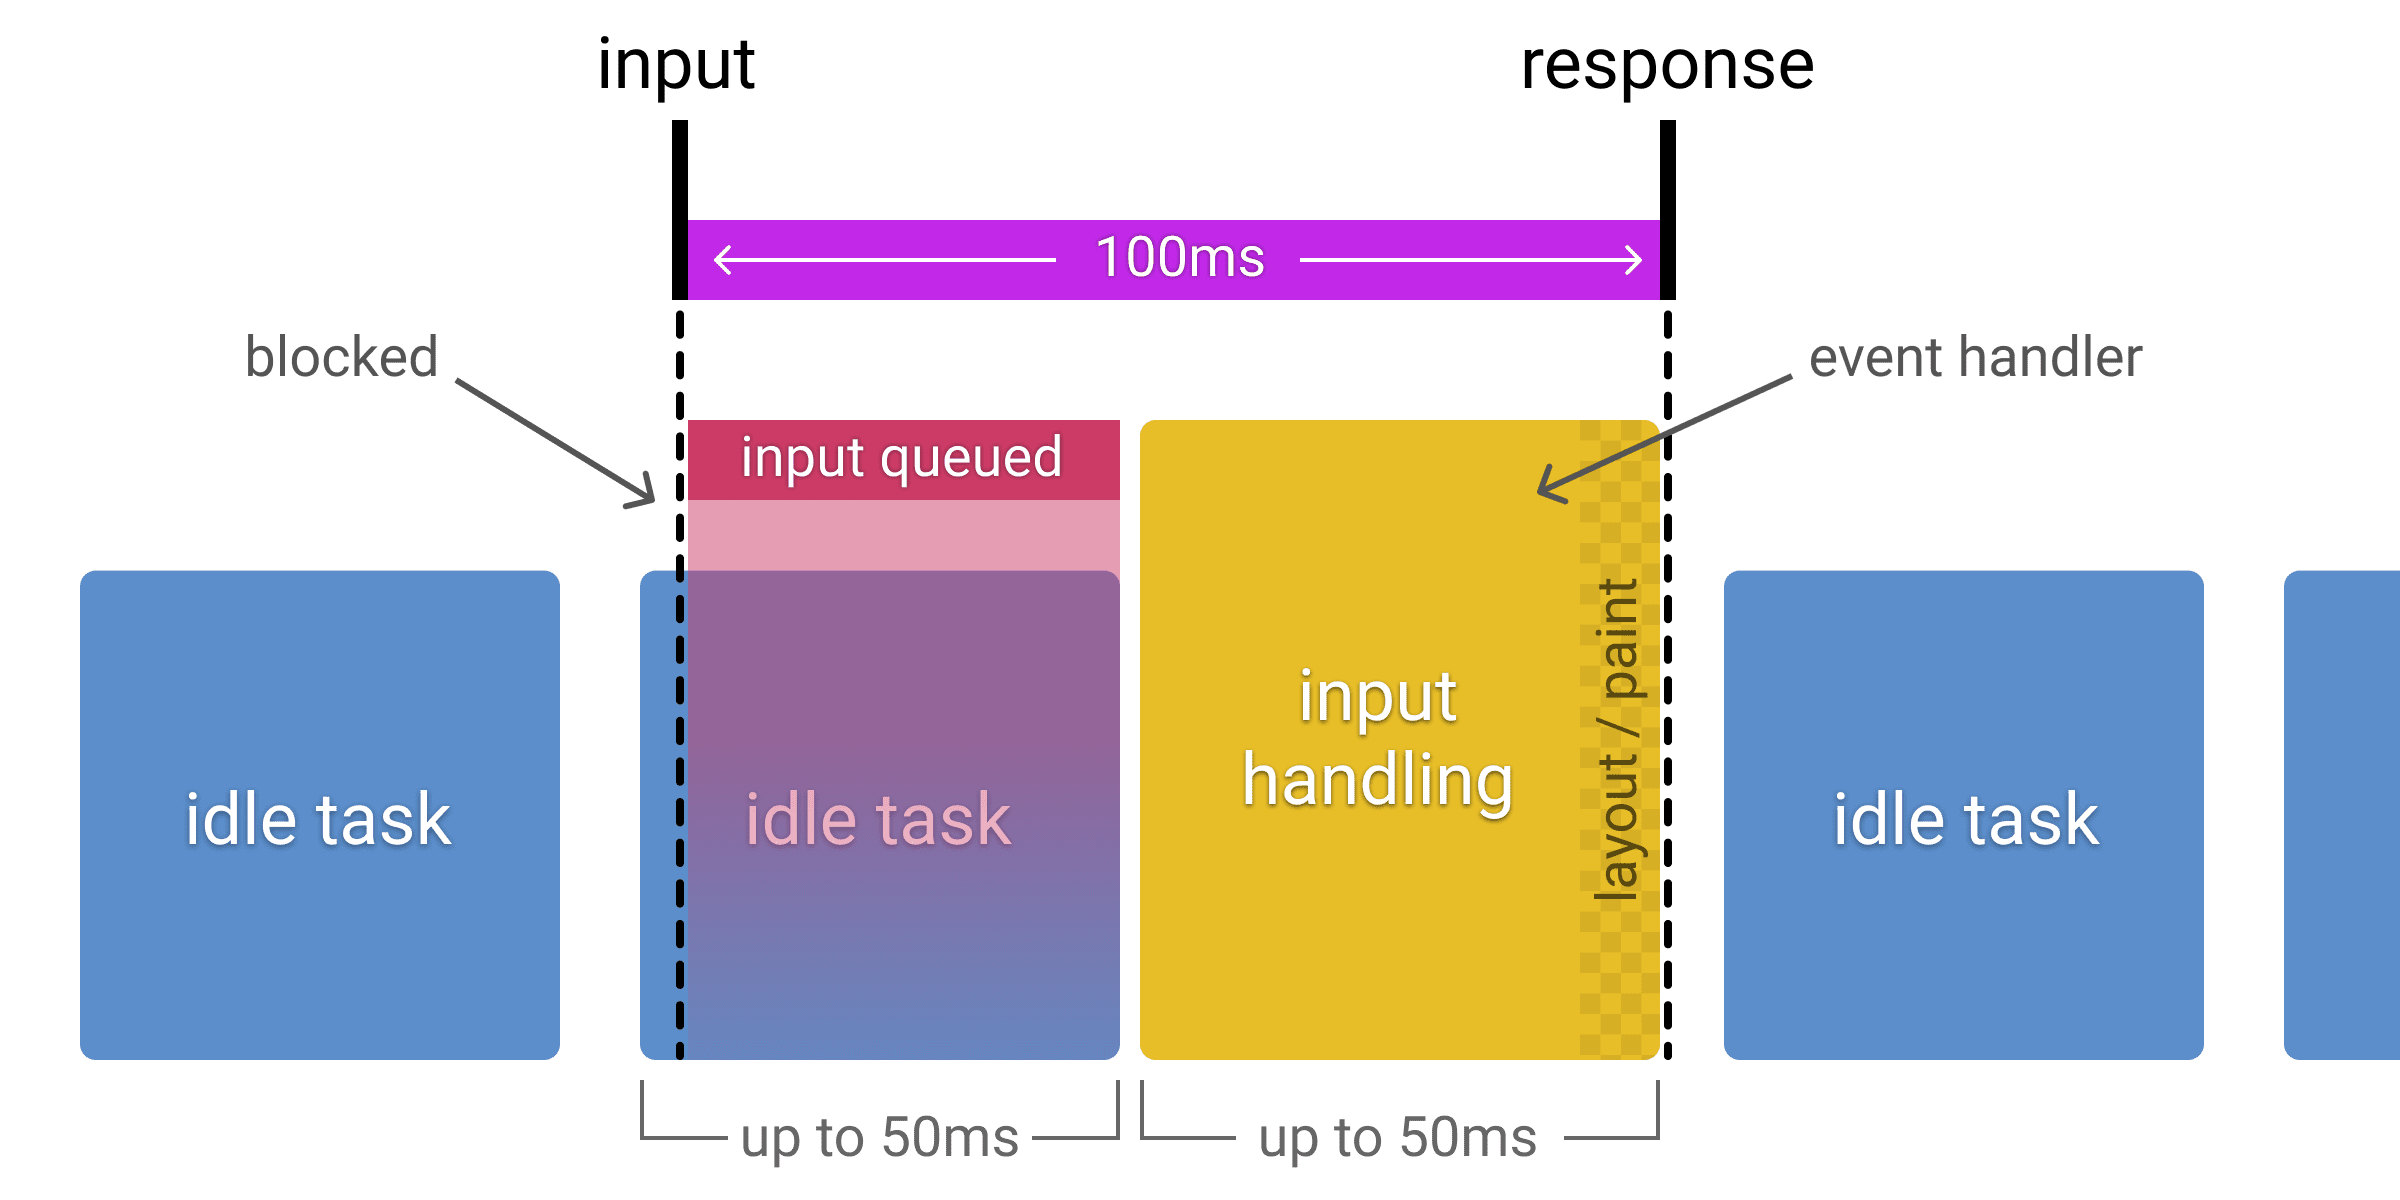 Diagrama que muestra cómo se pone en cola la entrada recibida durante una tarea inactiva, lo que reduce el tiempo de procesamiento de entrada disponible a 50 ms